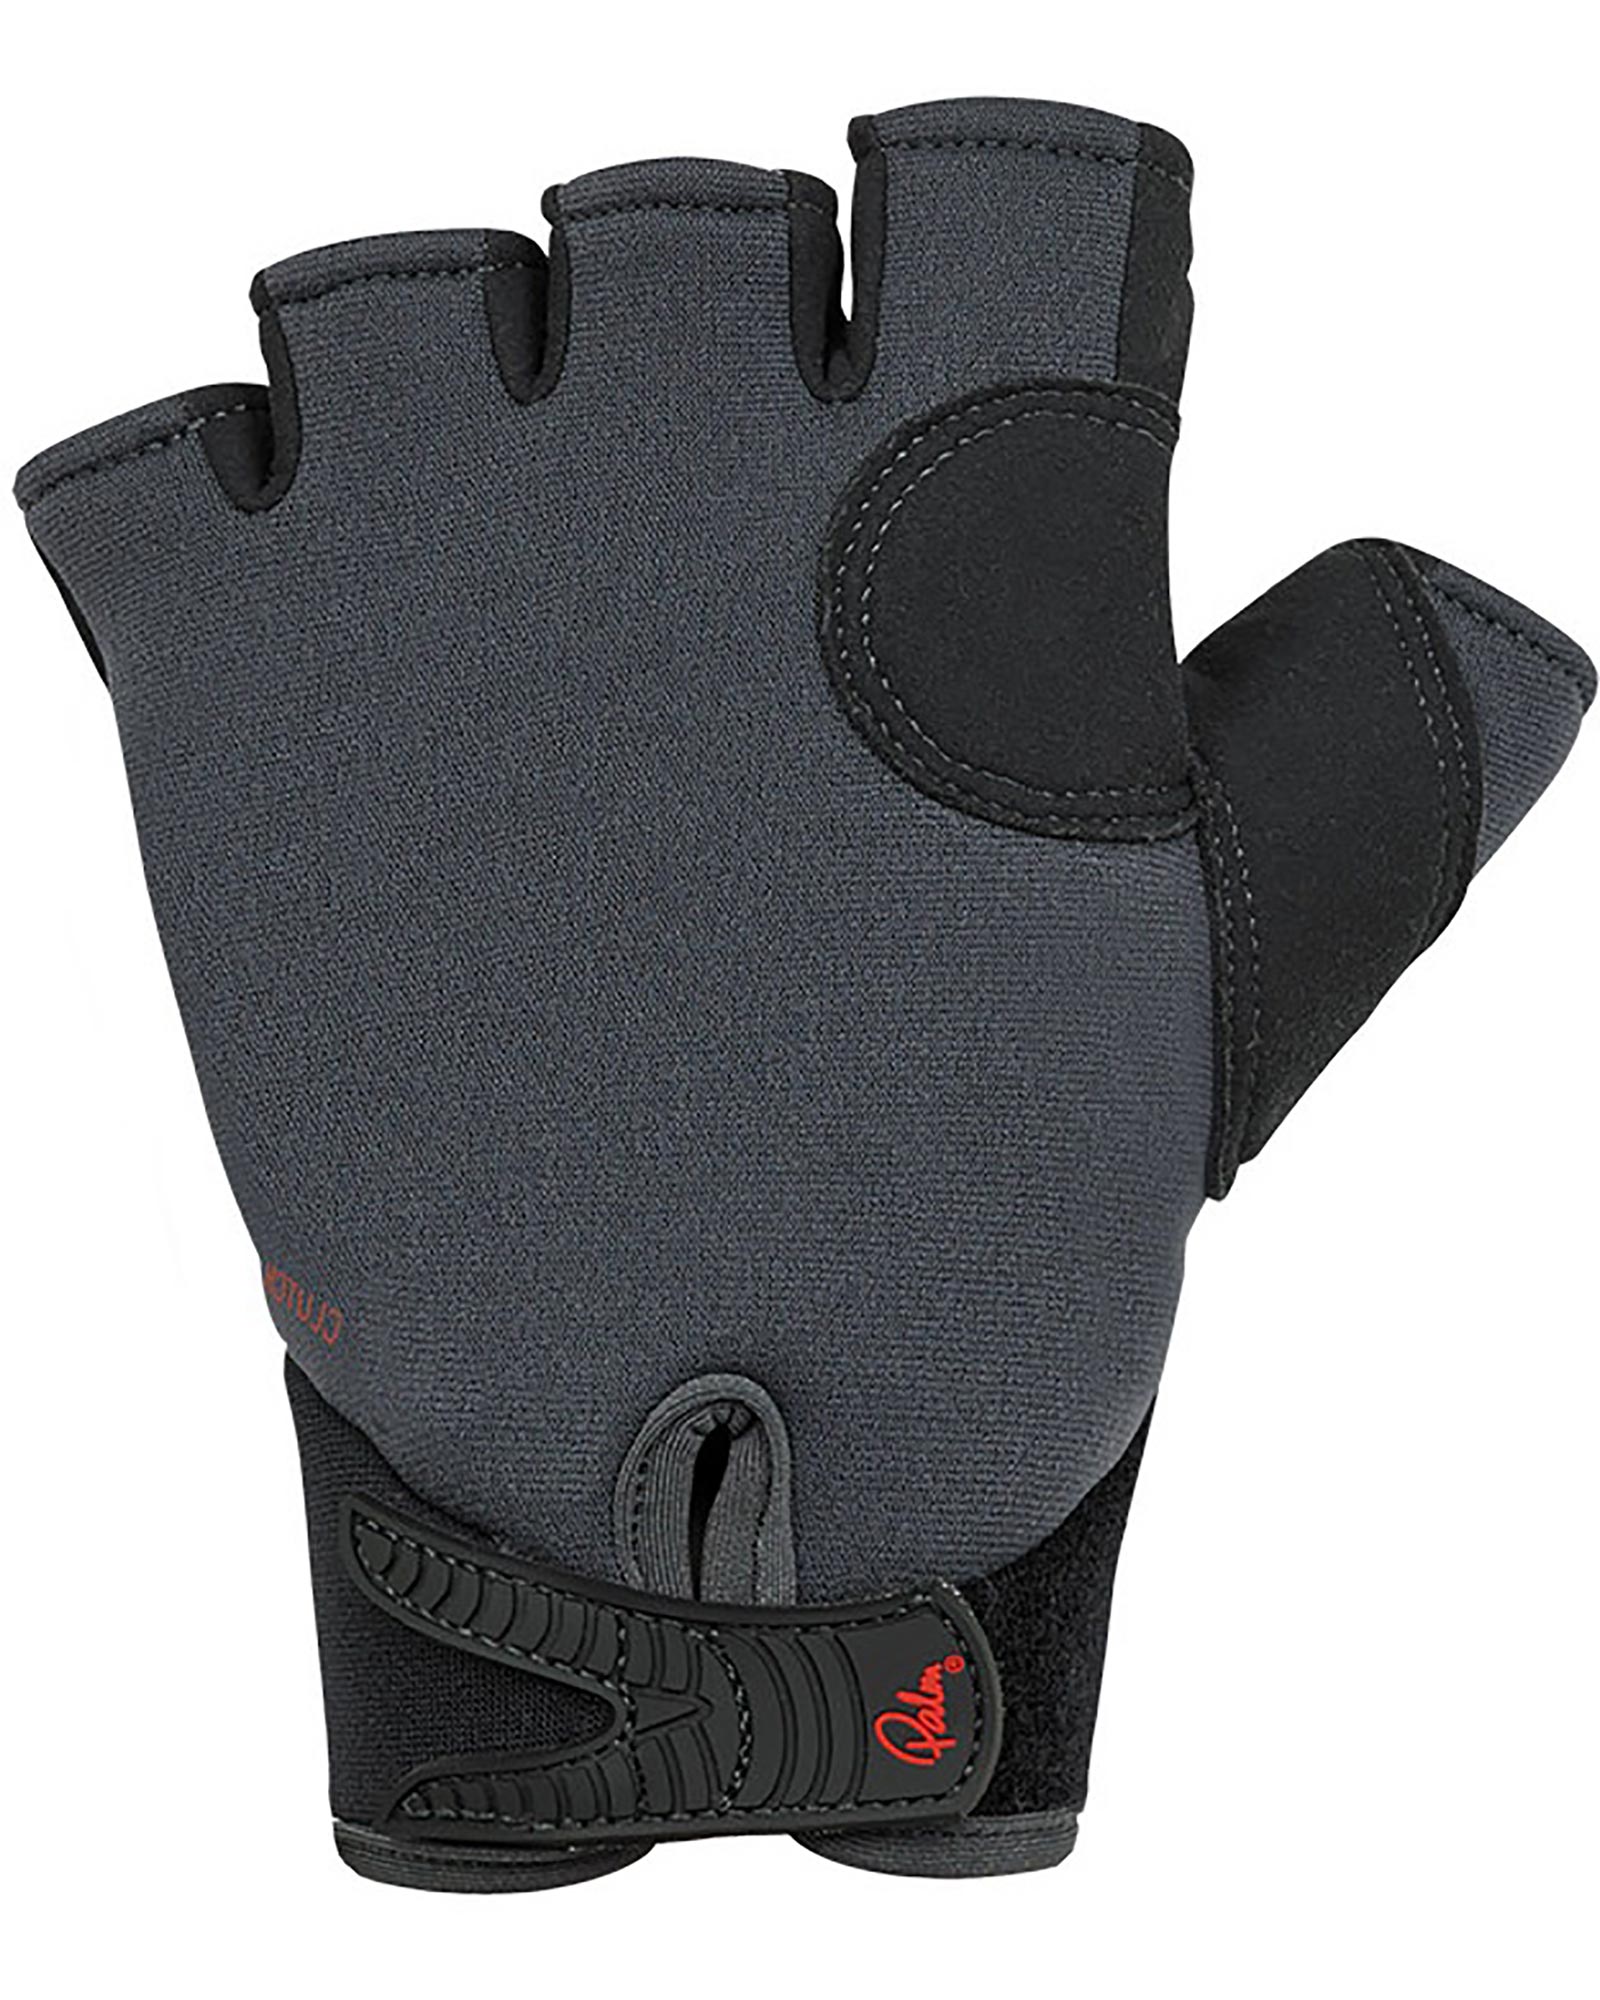 Palm Clutch Gloves 0